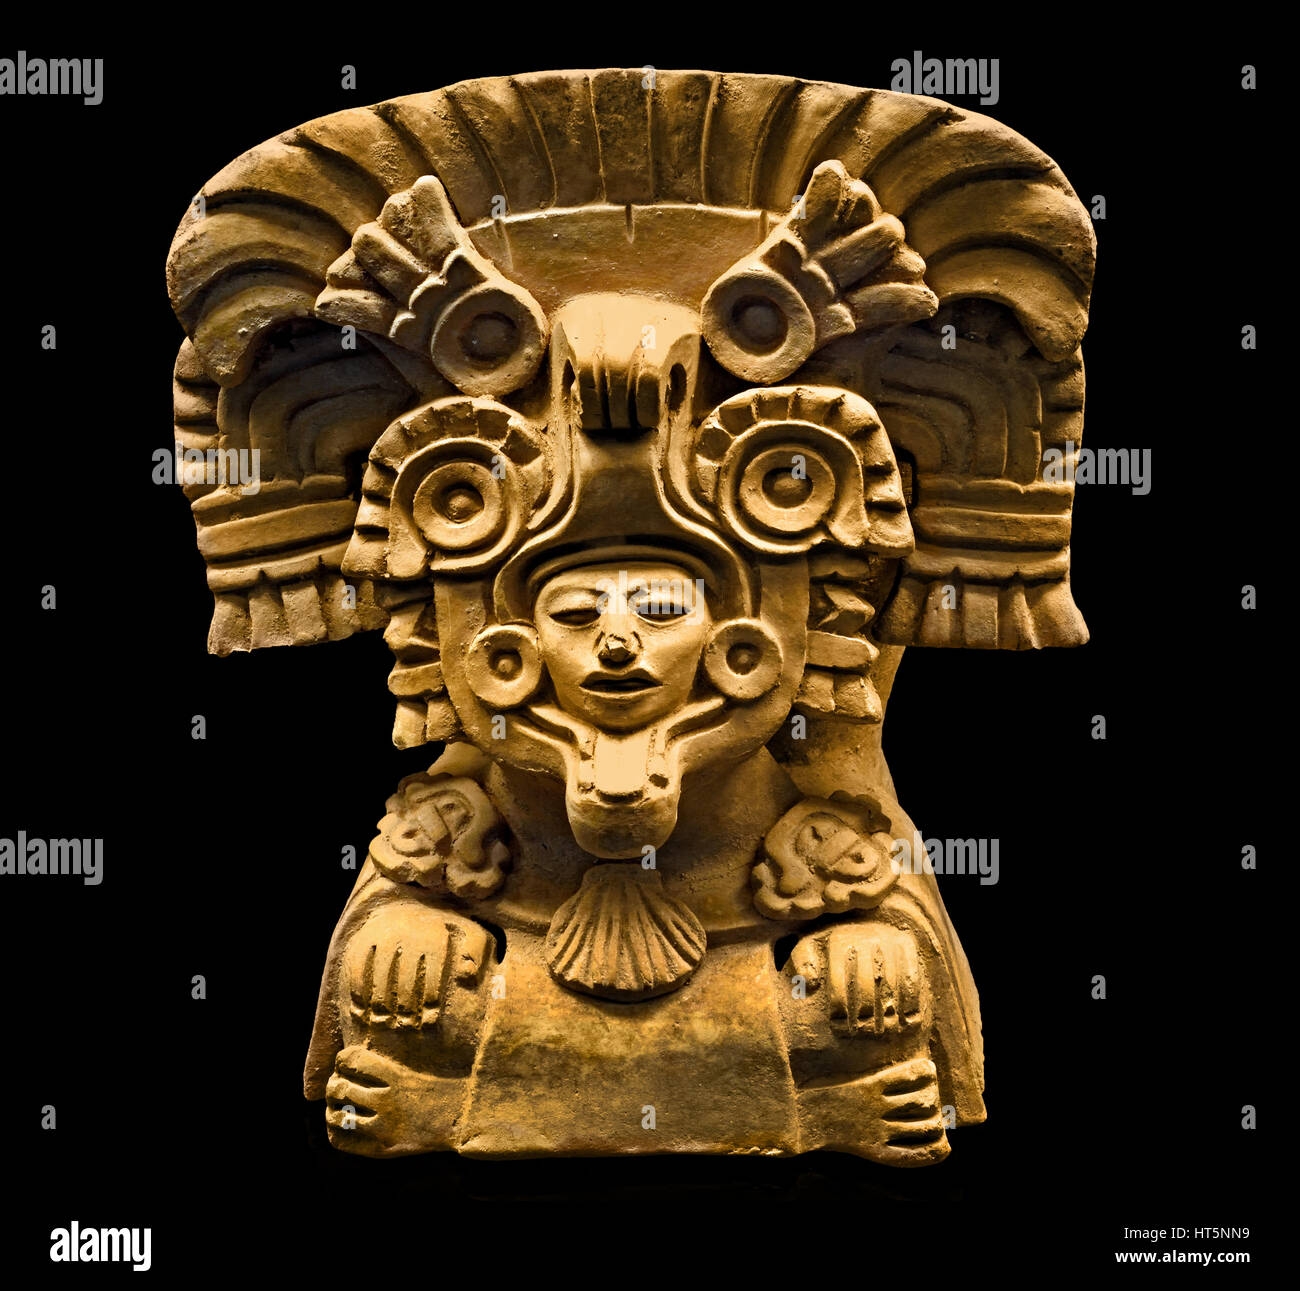 Pot en argile 277-614 Figurine Mexique Sierra Juarez Zapotèques (Culture) 26 x 23,4 x 22,4 cm zapotèques civilisation zapotèque méso-Américain Précolombien Amérique Centrale 500 BC - AD 900 . Banque D'Images